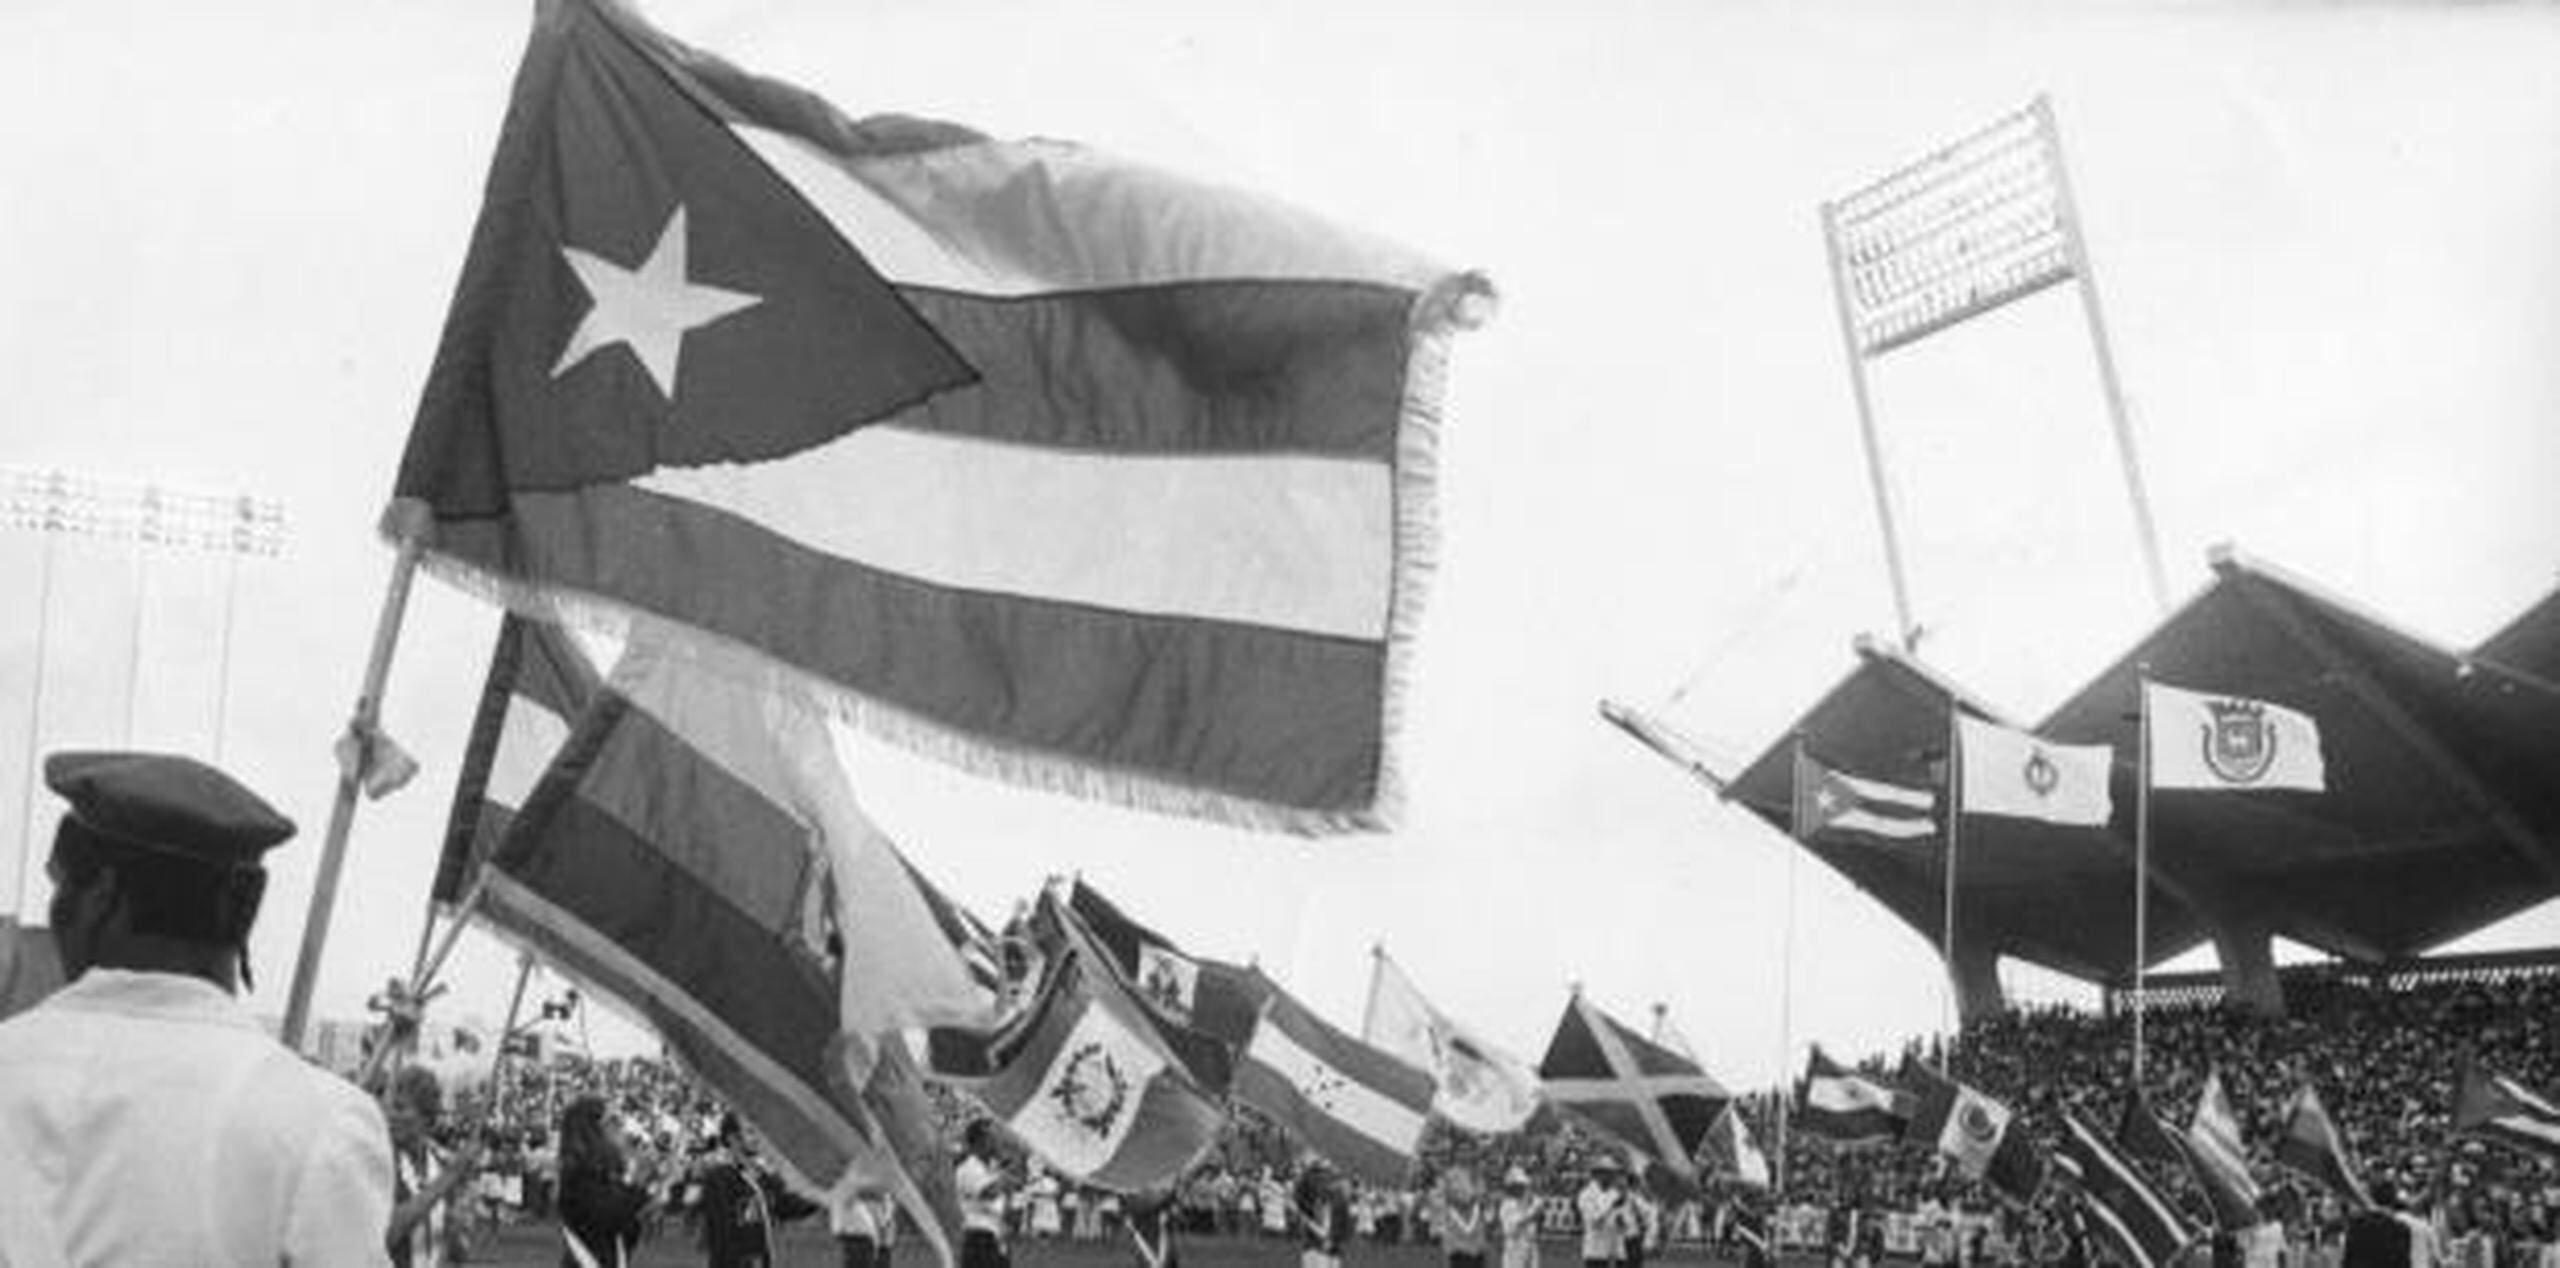 Y es que San Juan 1979 fue un evento que reunió al continente de América (34 países, 5,029 participantes entre atletas, técnicos y oficiales) en la zona metro de San Juan durante dos semanas. (Archivo)